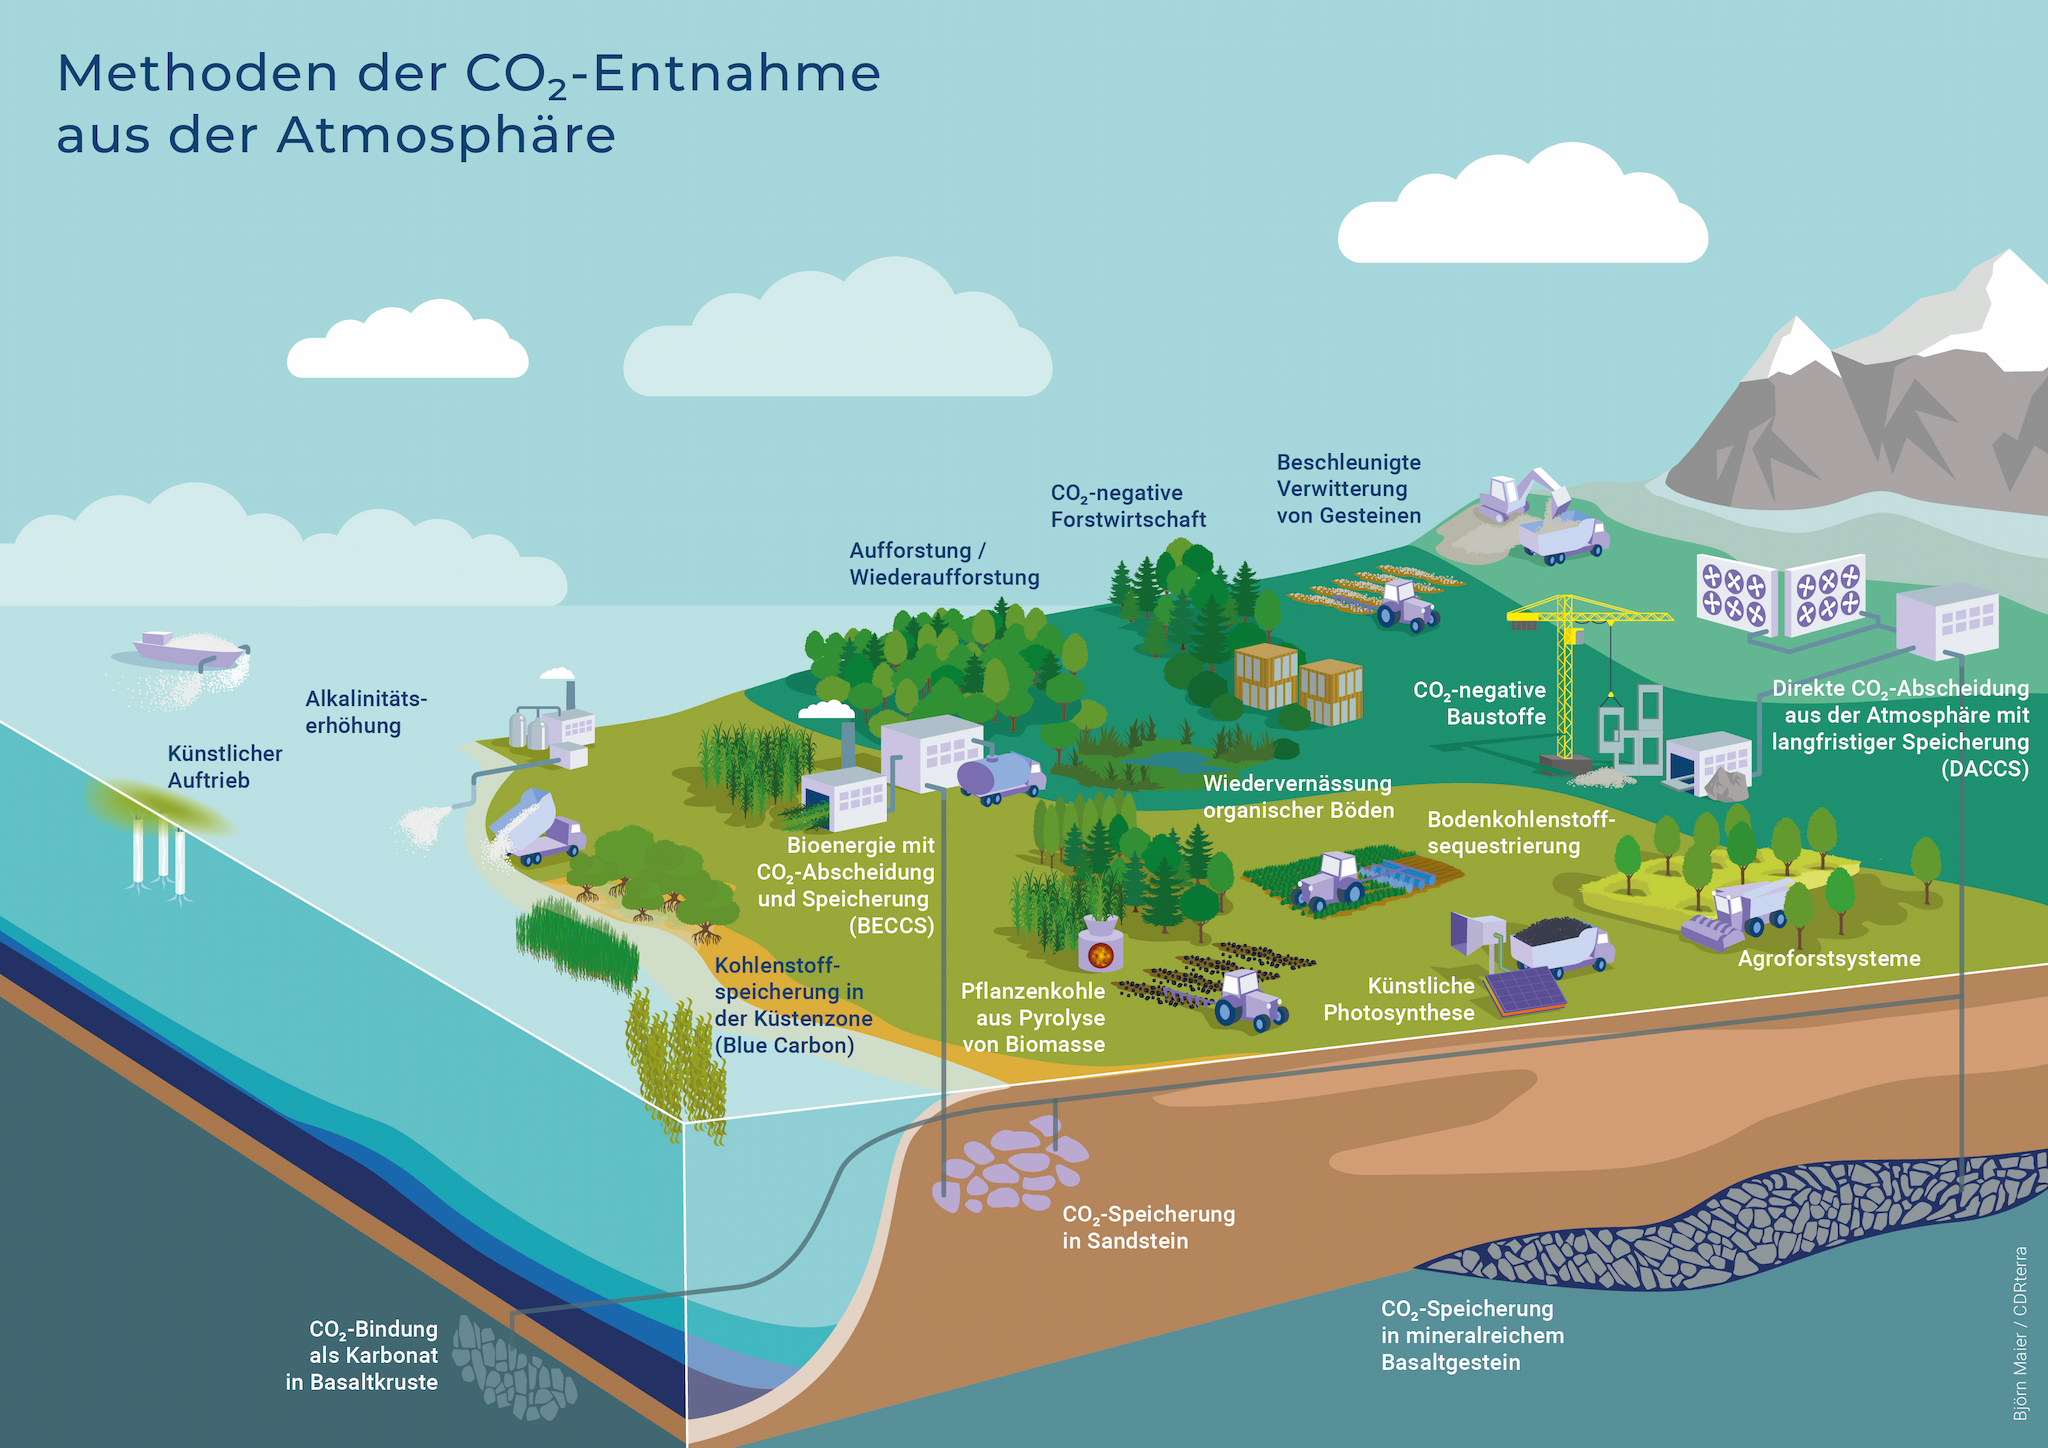 Methoden der CO2-Entnahme aus der Atmosphäre - Quelle: CDRterra Björn Maier